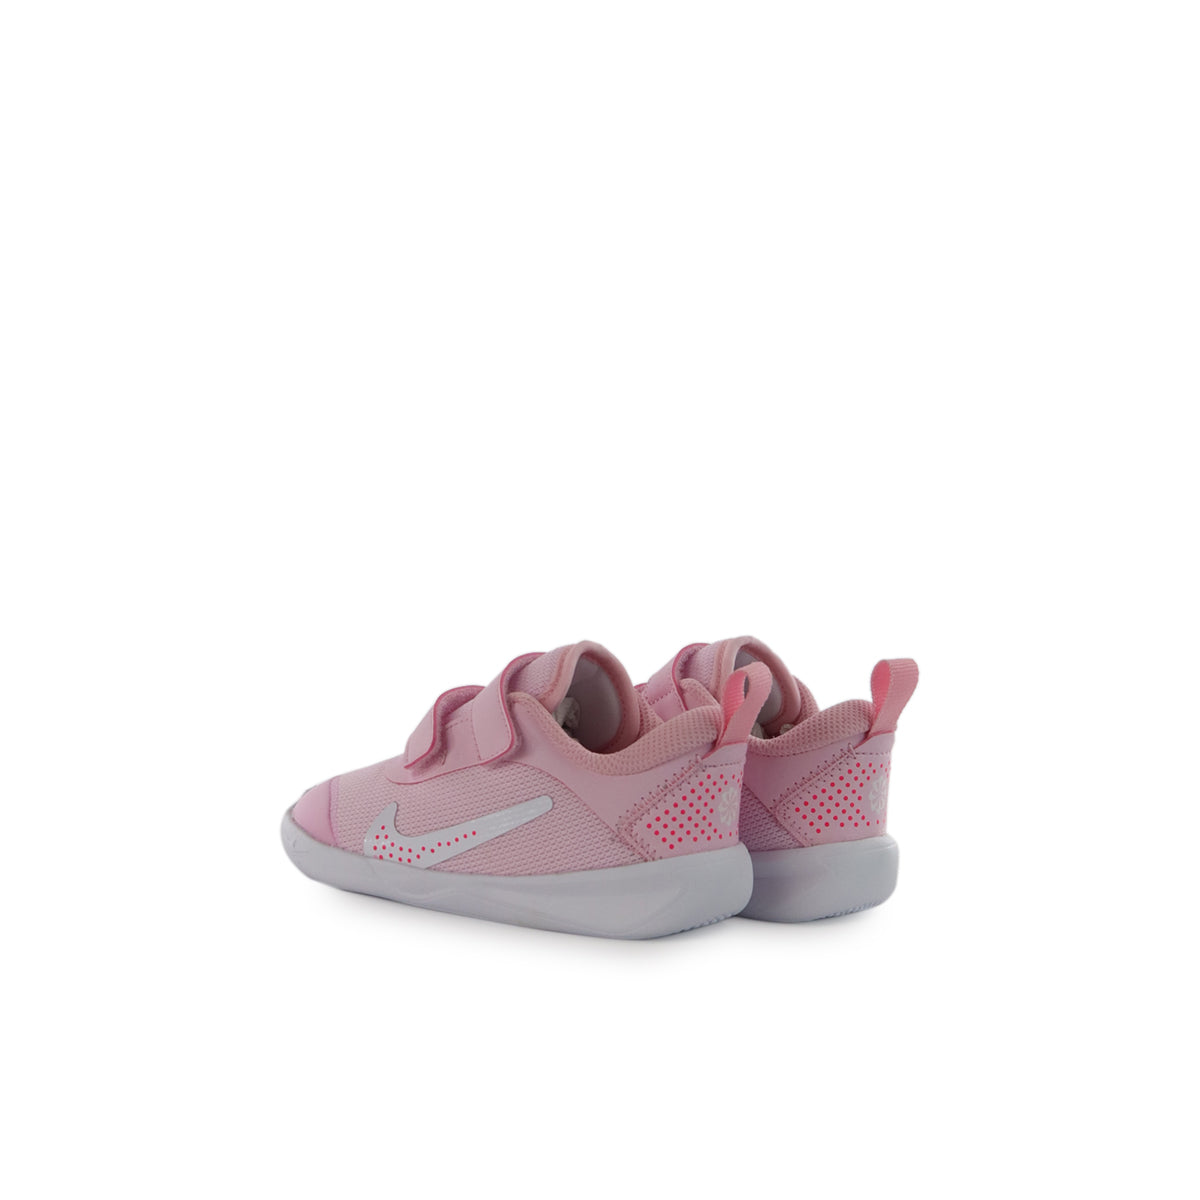 – x rosa-weiss Multi-Court Brooklyn Fashion Footwear - Nike DM9028-600 Omni (TD)